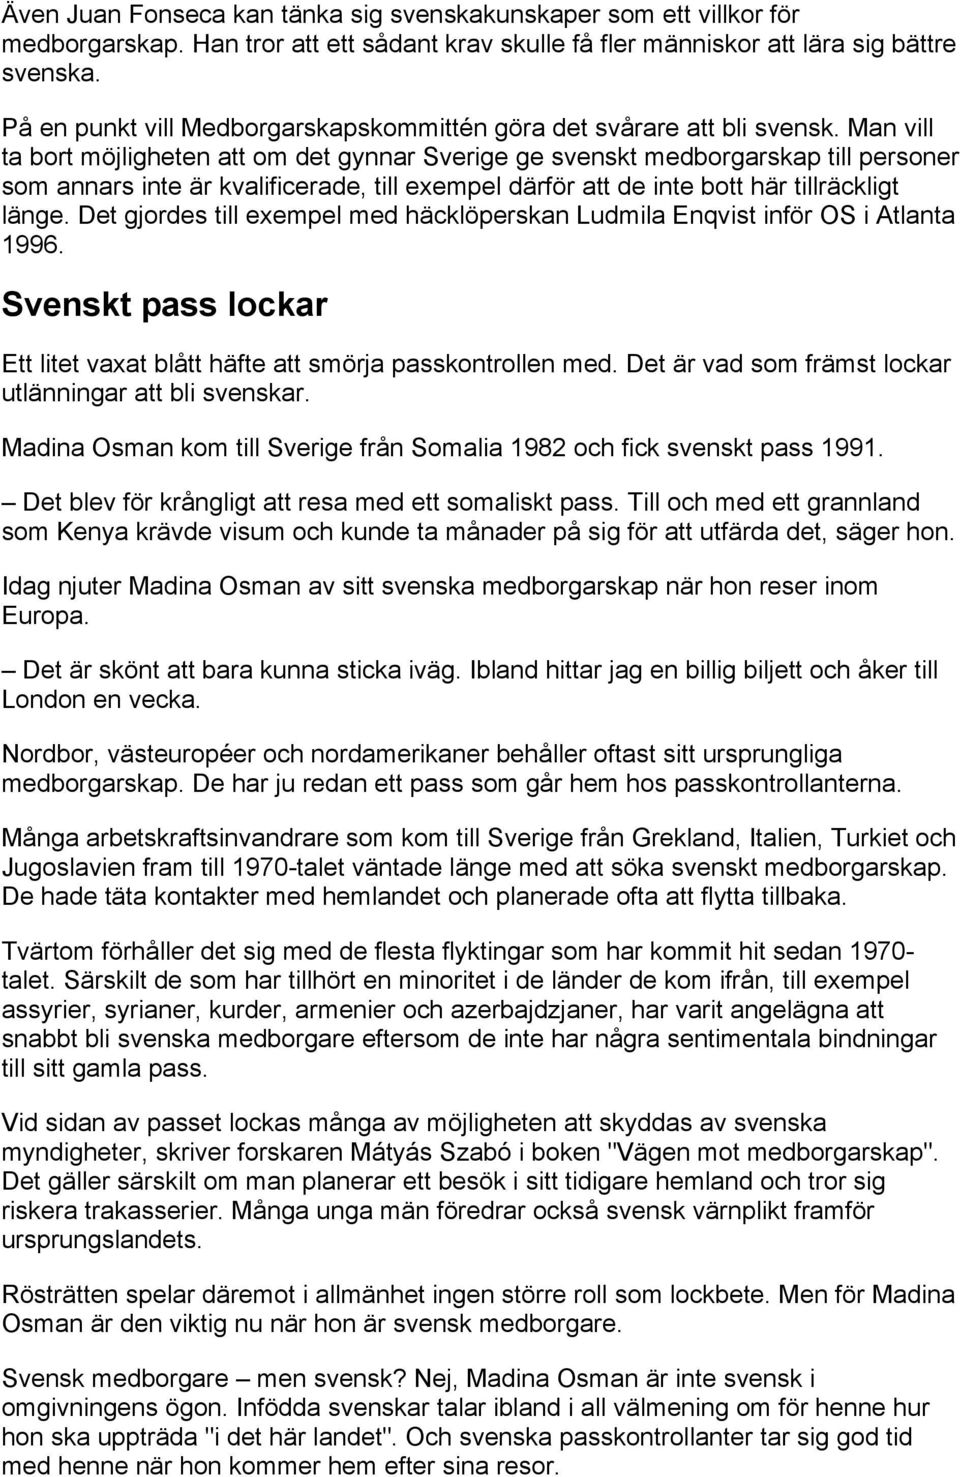 Man vill ta bort möjligheten att om det gynnar Sverige ge svenskt medborgarskap till personer som annars inte är kvalificerade, till exempel därför att de inte bott här tillräckligt länge.